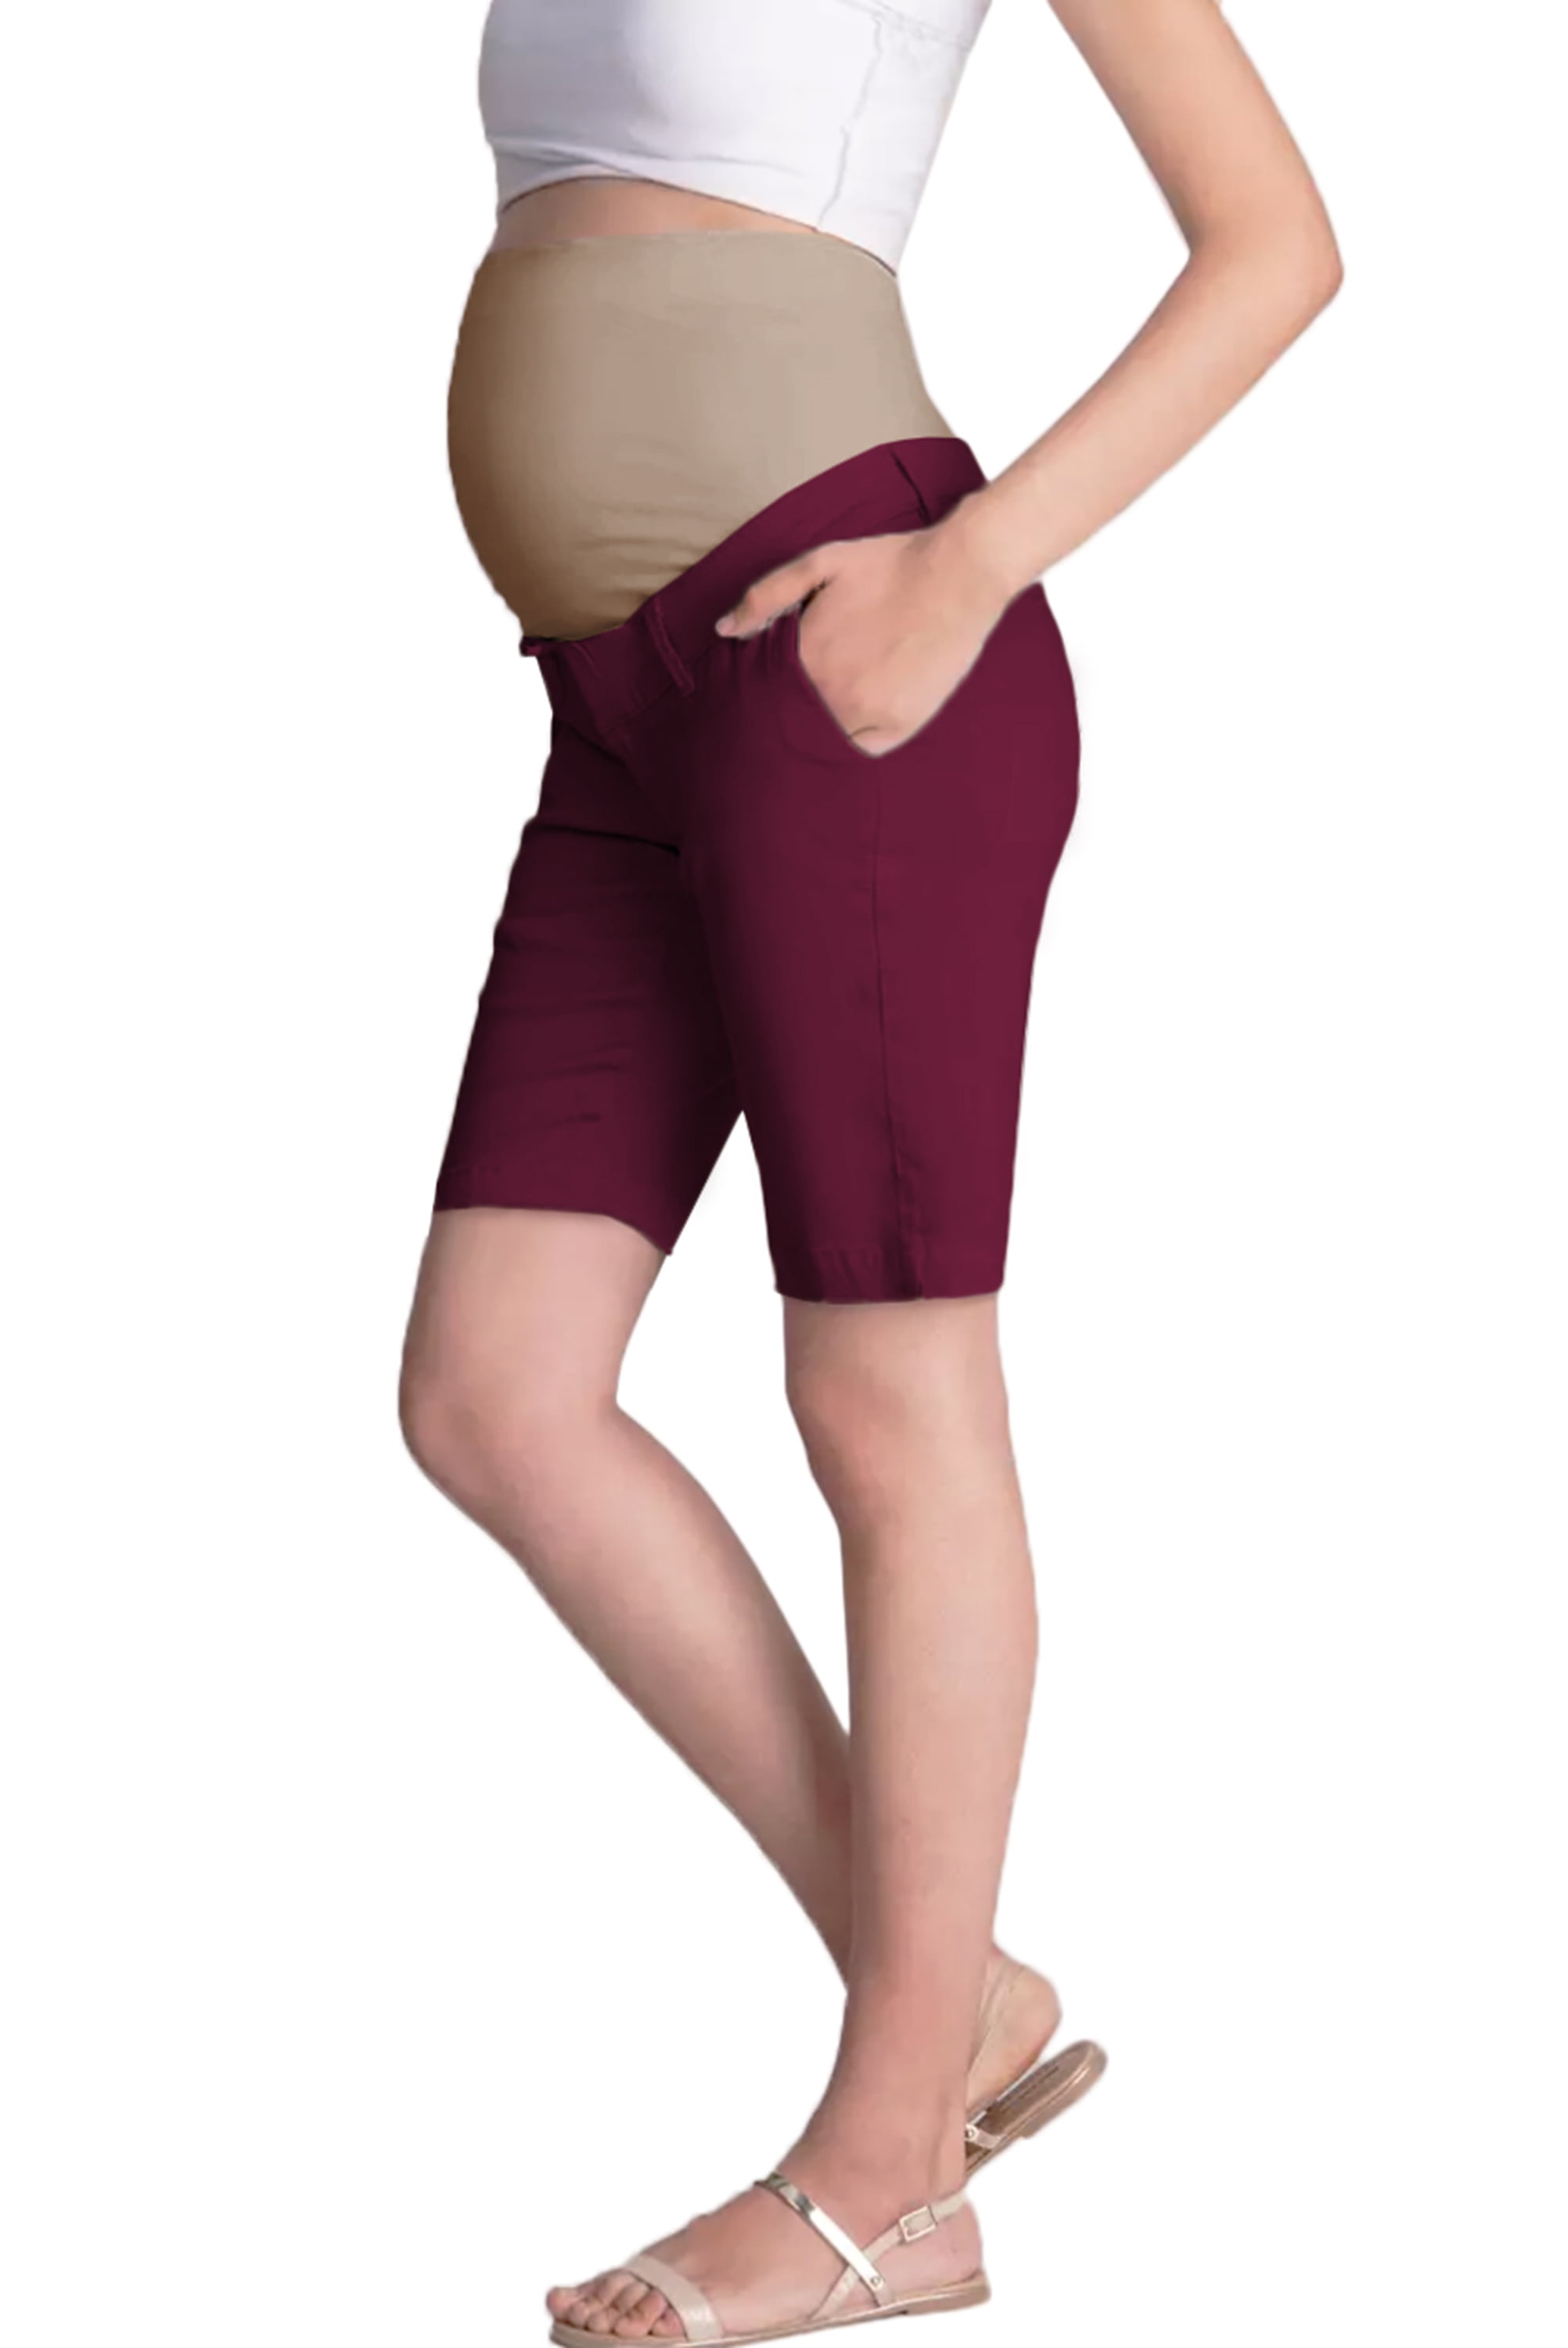 Bermuda Hybrid & Company Super Comfy Stretch Womens Skinny Maternity Jeans Capri 